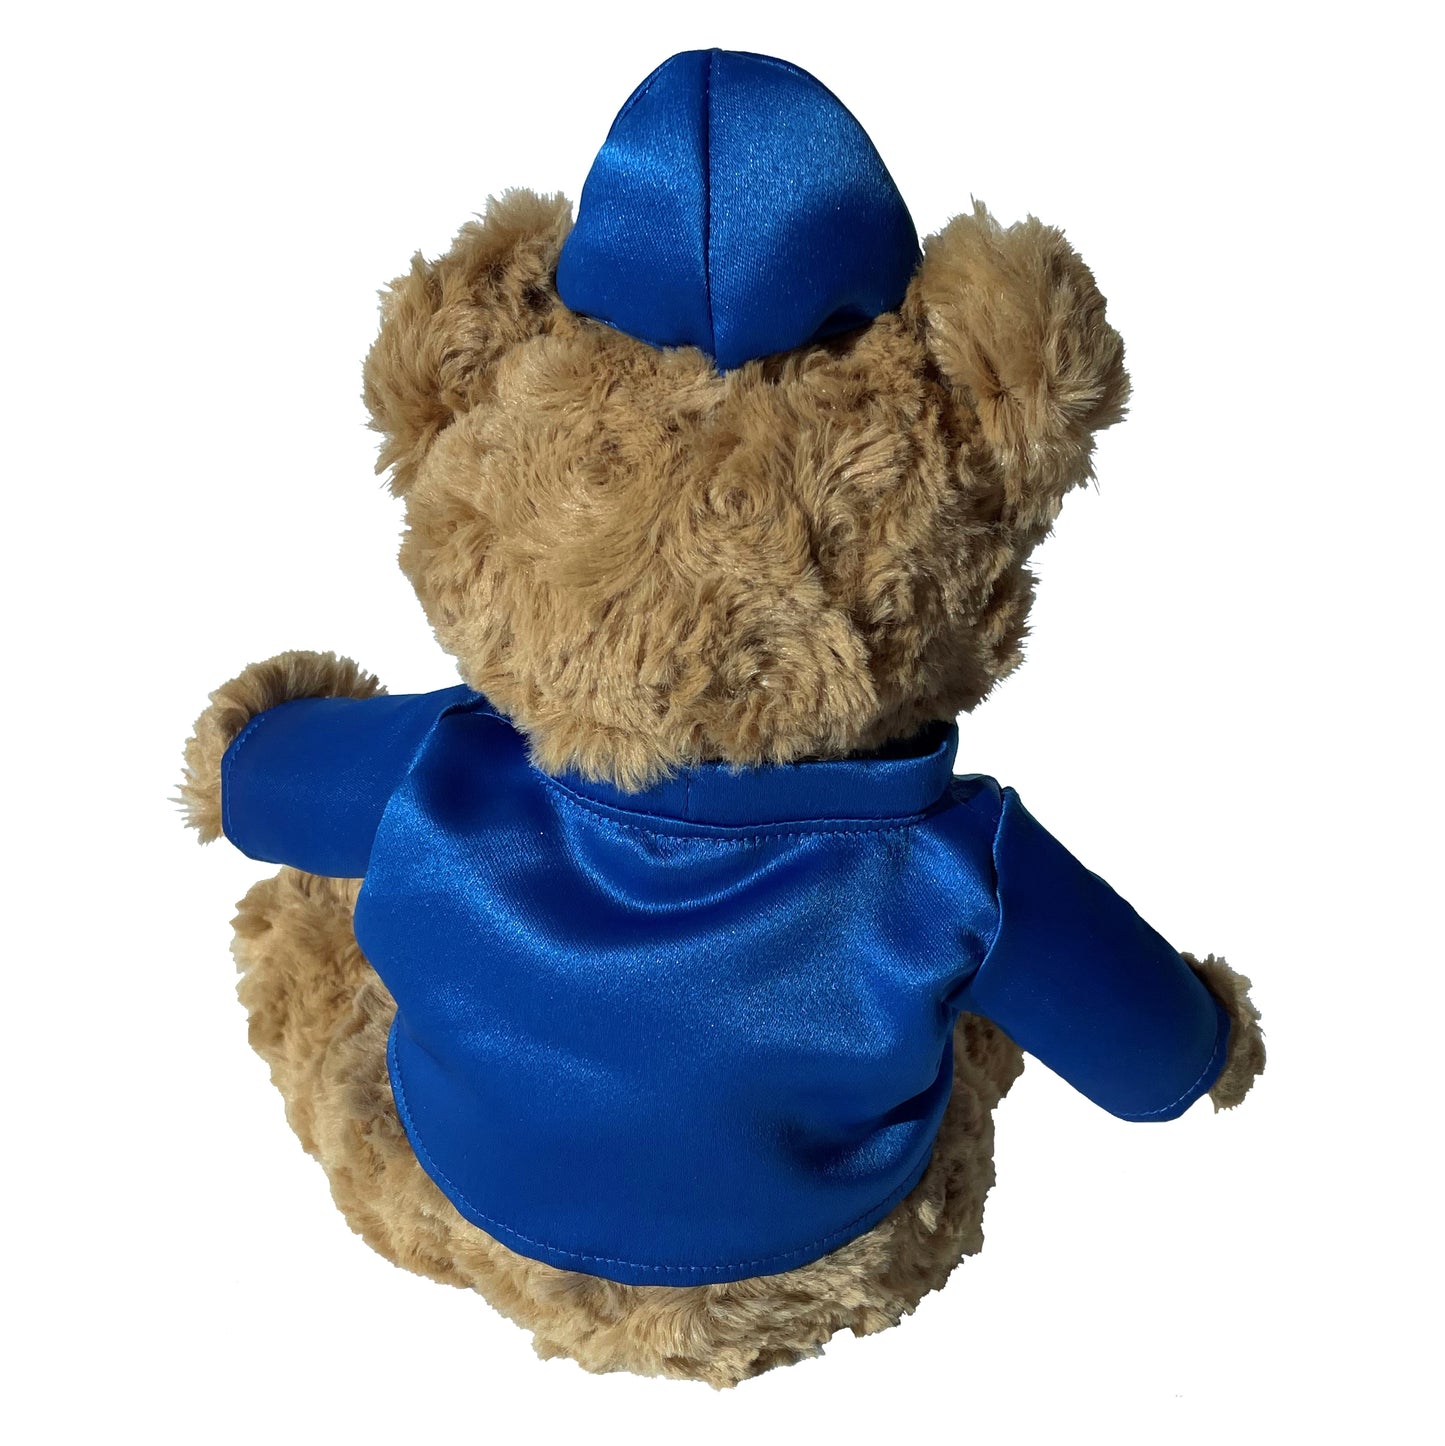 Godolphin Teddy Bear